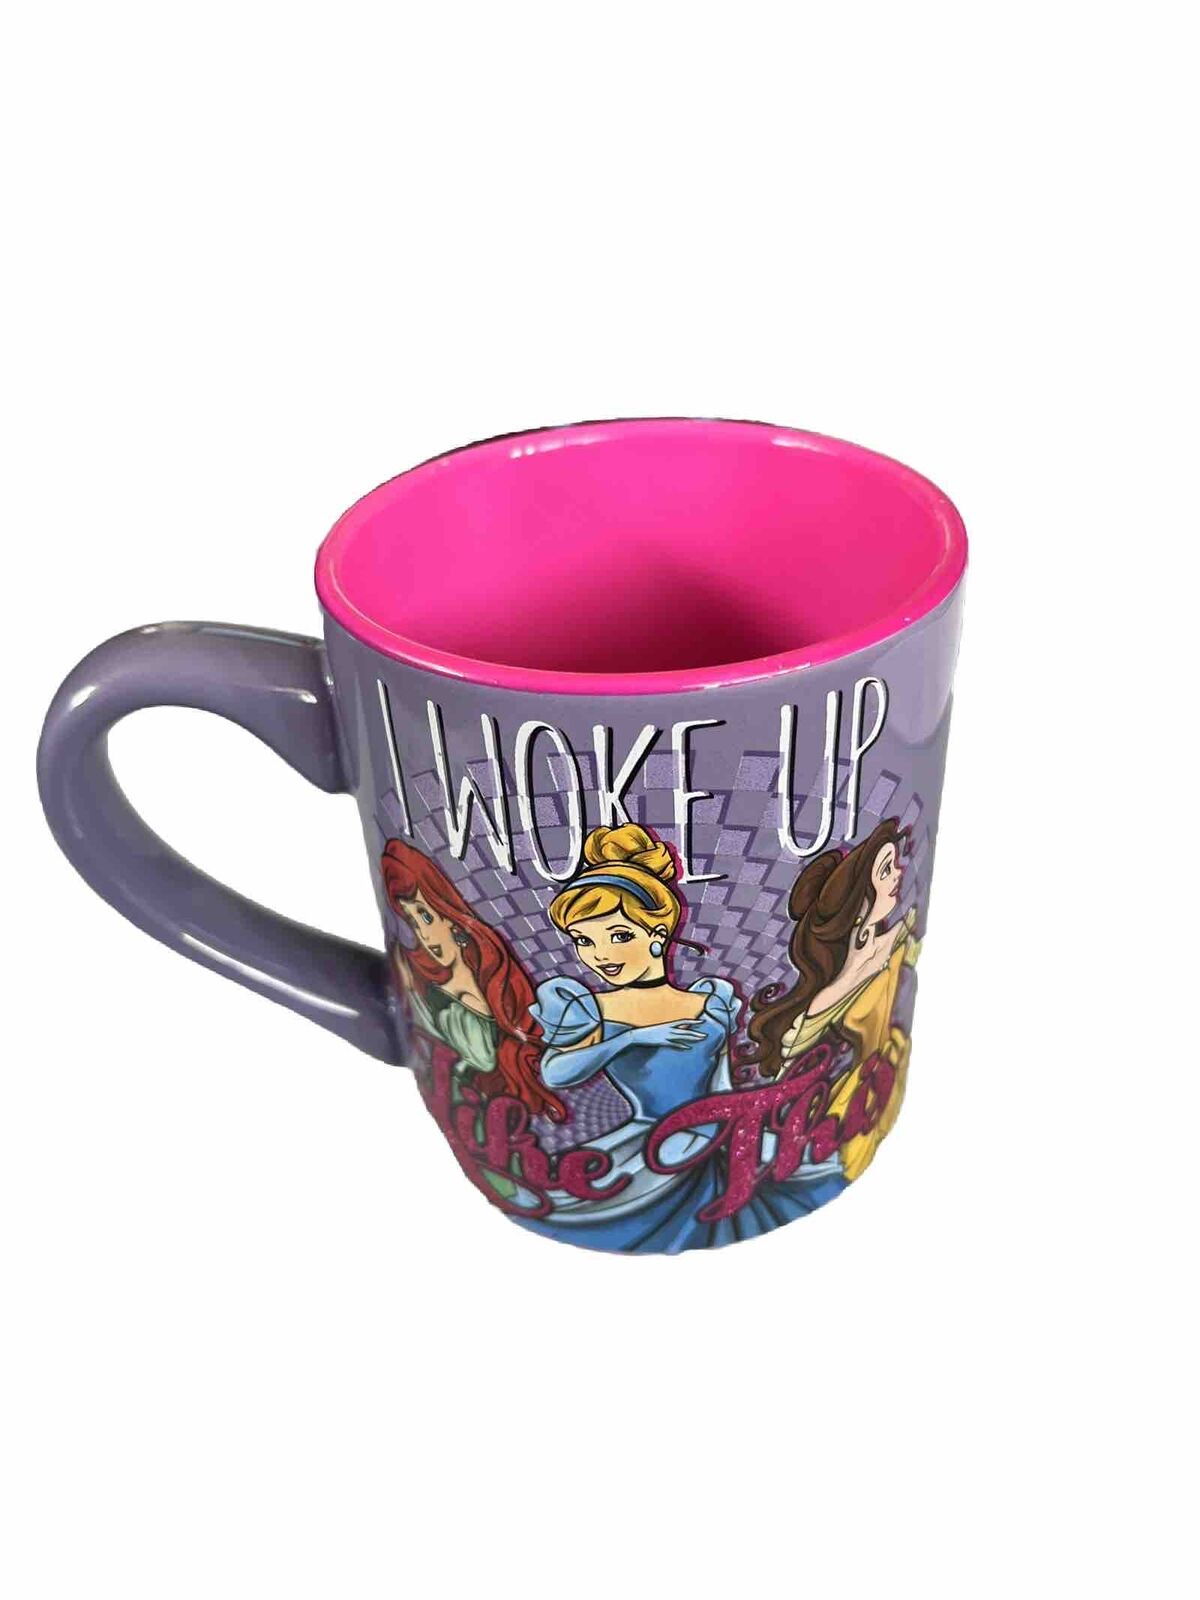 Official Disney Princess I WOKE UP LIKE THIS 14 oz Ceramic Coffee Mug